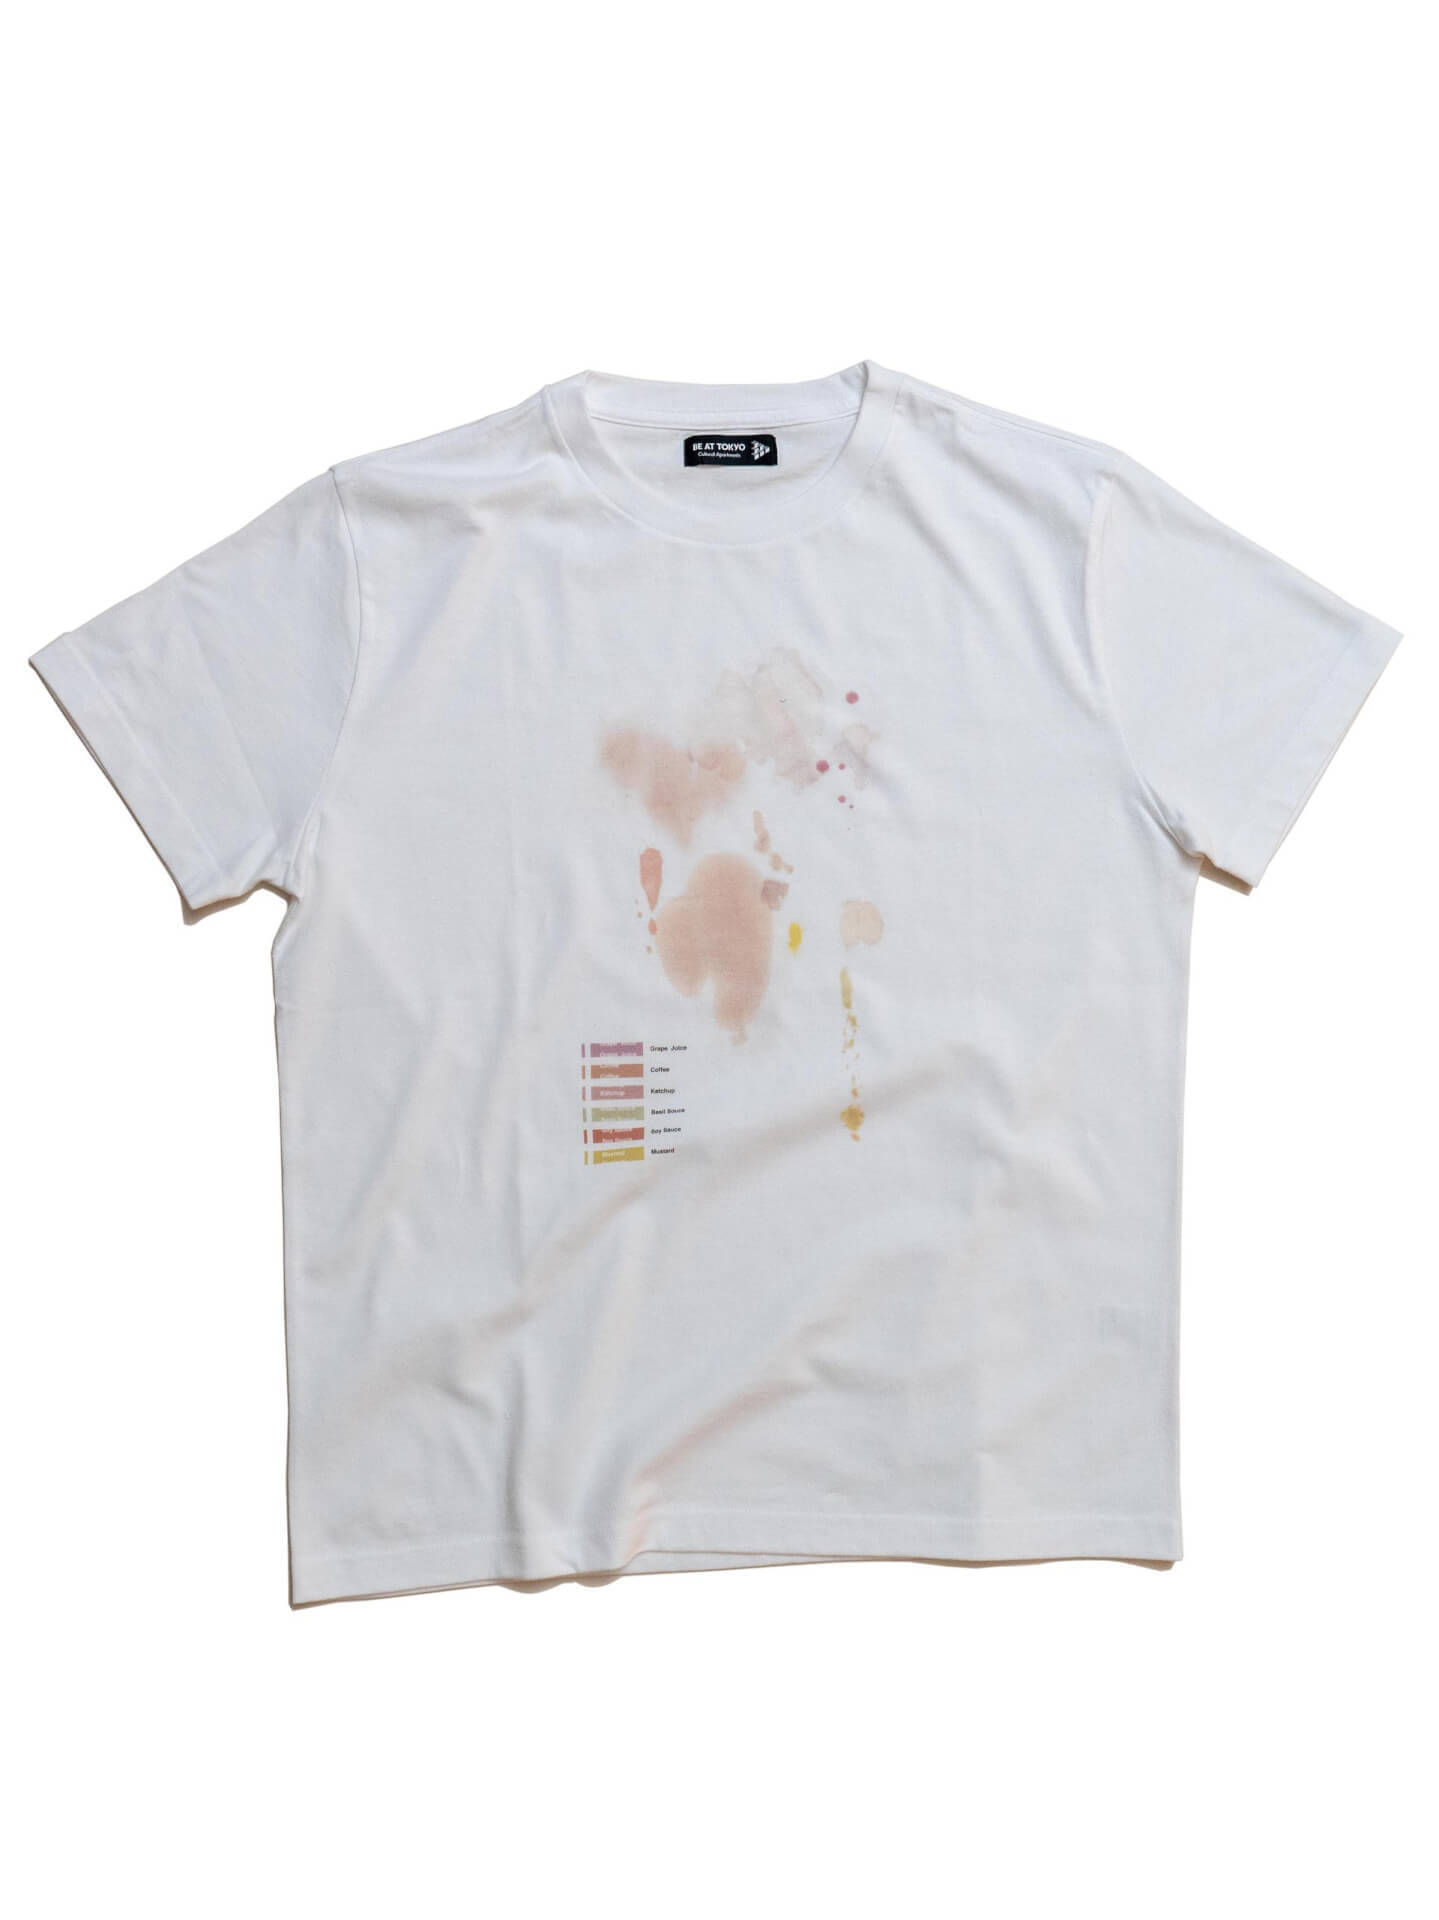 Tシャツを通した表現「BE AT TEE COLLECTION」がスタート！xiangyu、上出遼平らによるTシャツが受注販売